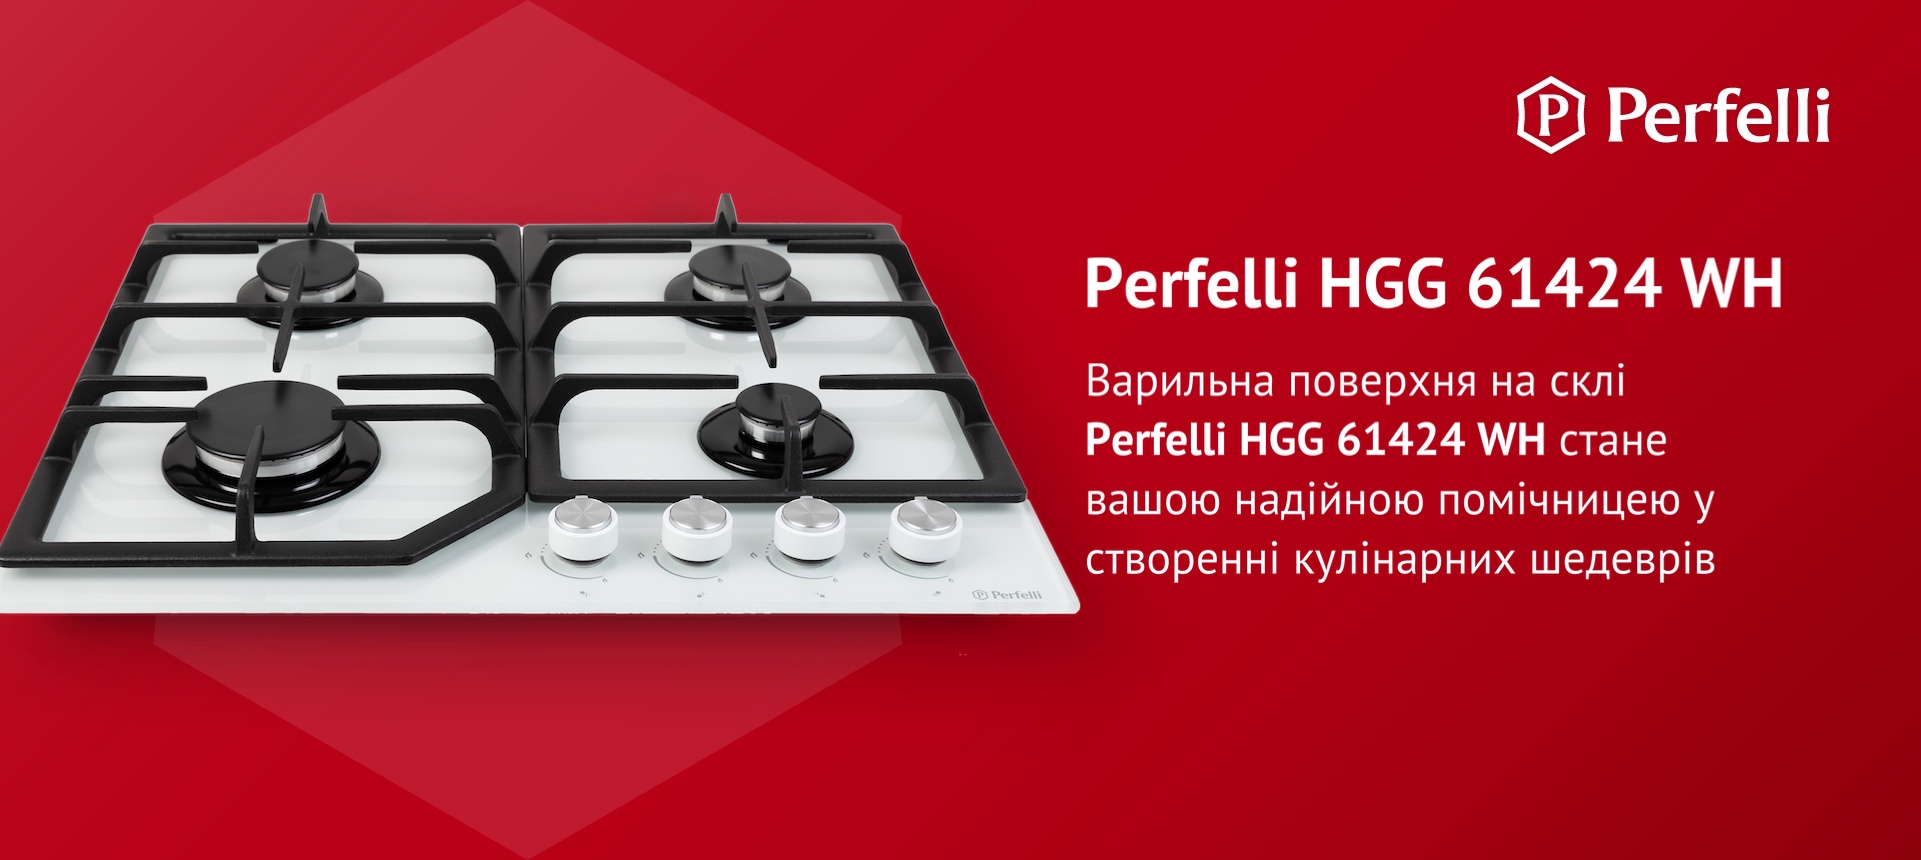 Варильна поверхня на склі Perfelli HGG 61424 WH стане вашою надійною помічницею у створенні кулінарних шедеврів